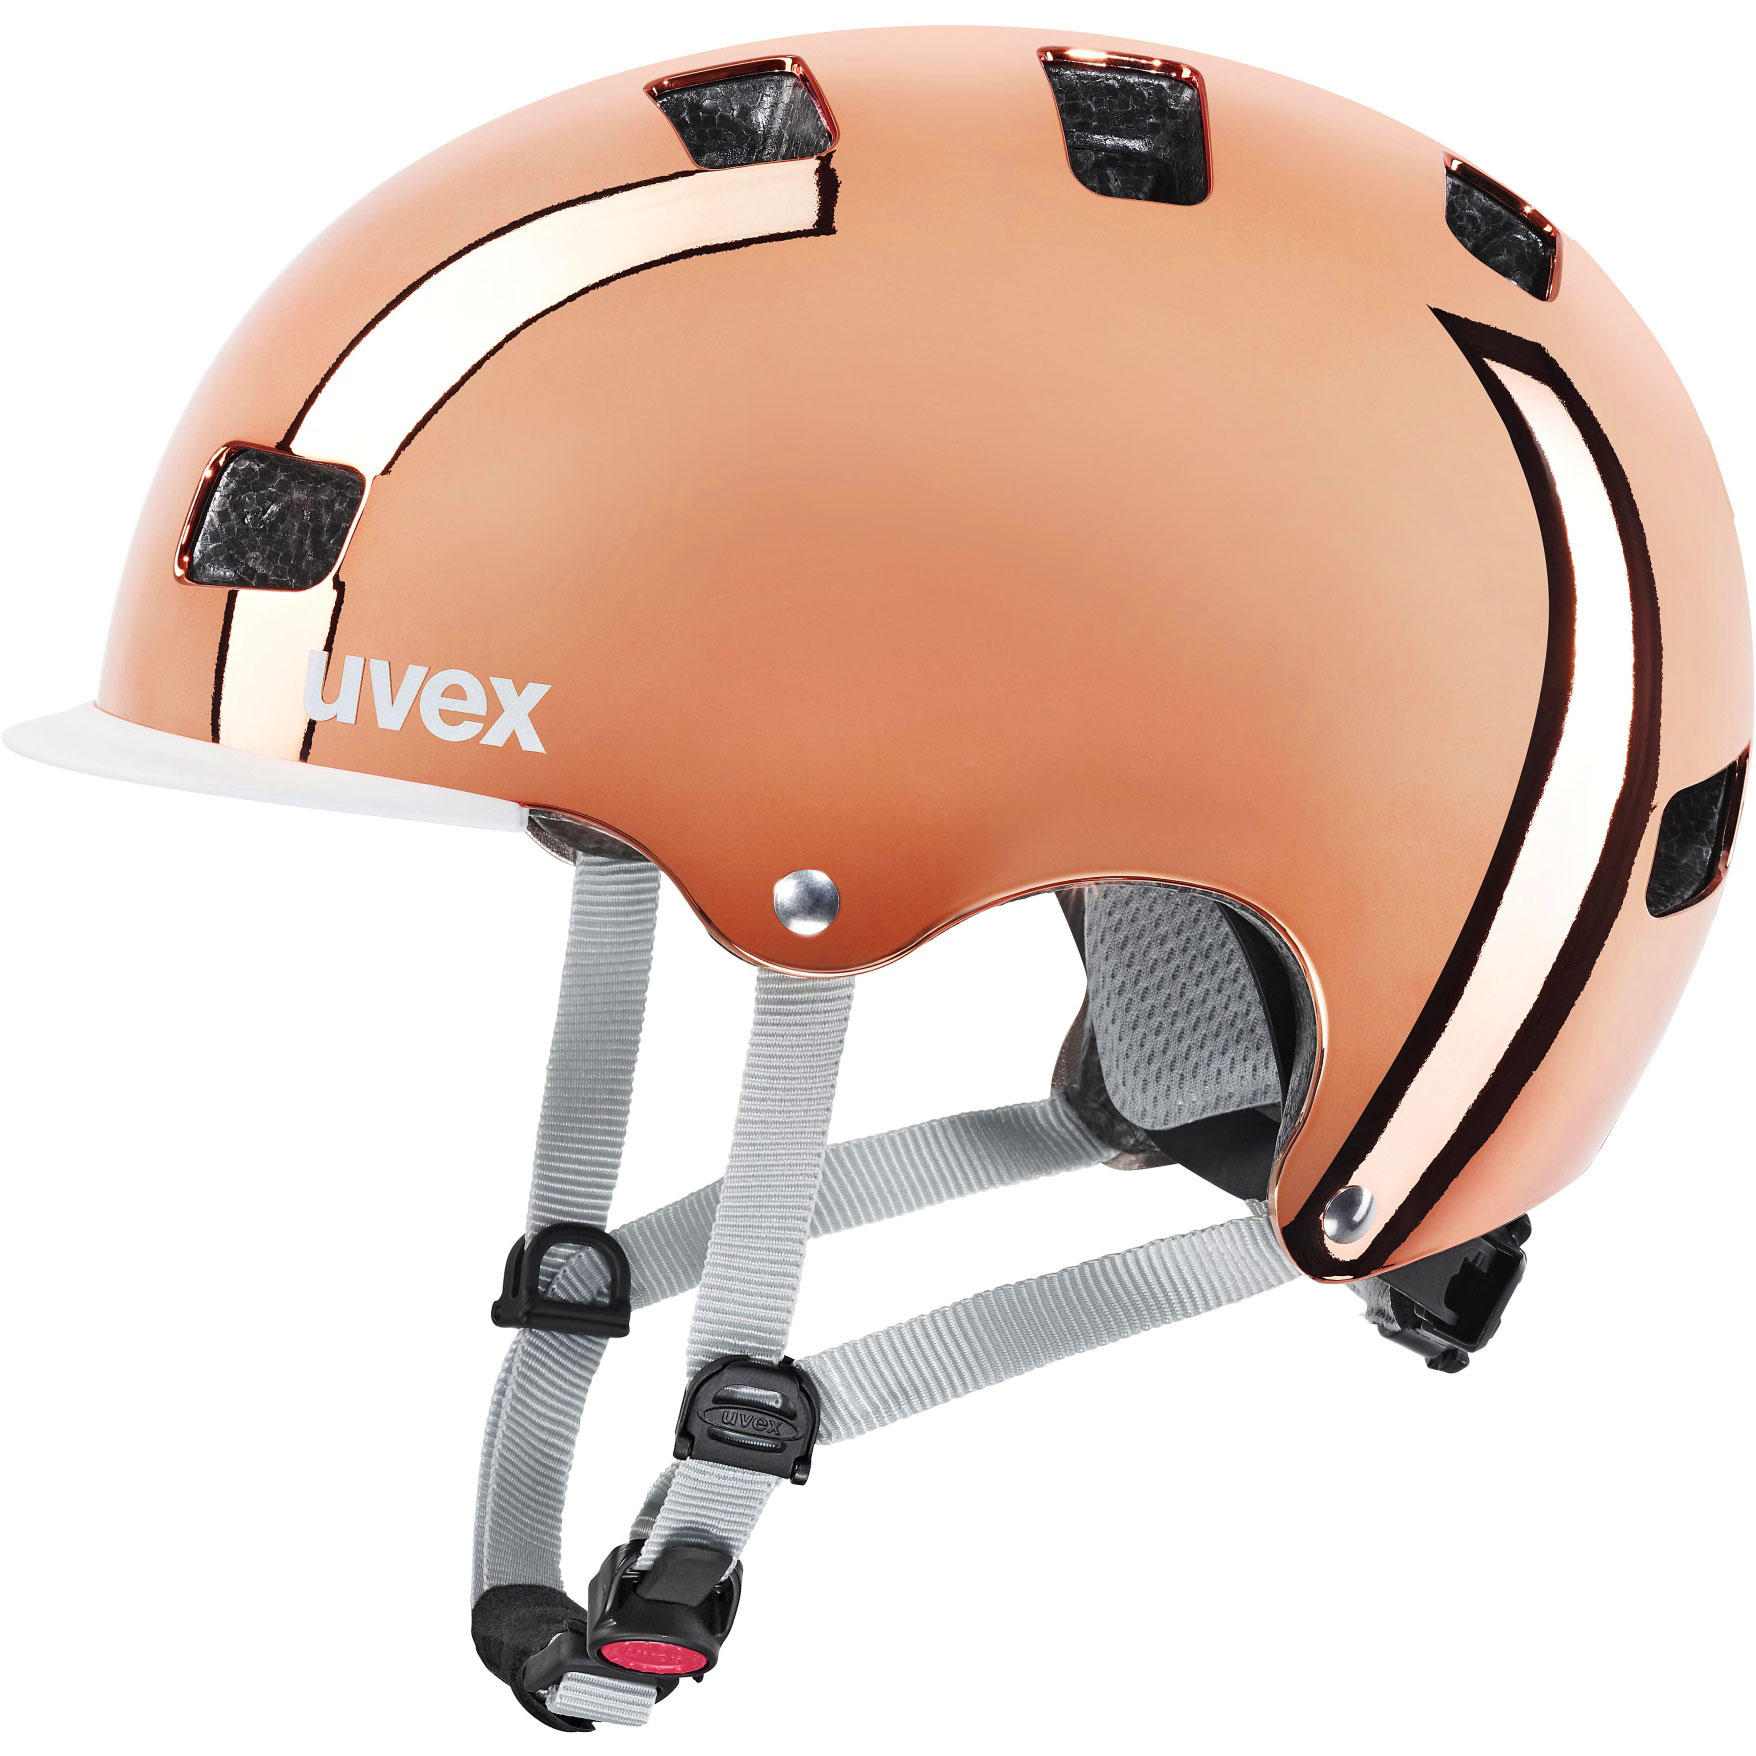 Produktbild von Uvex hlmt 5 bike pro Helm - rosé chrome